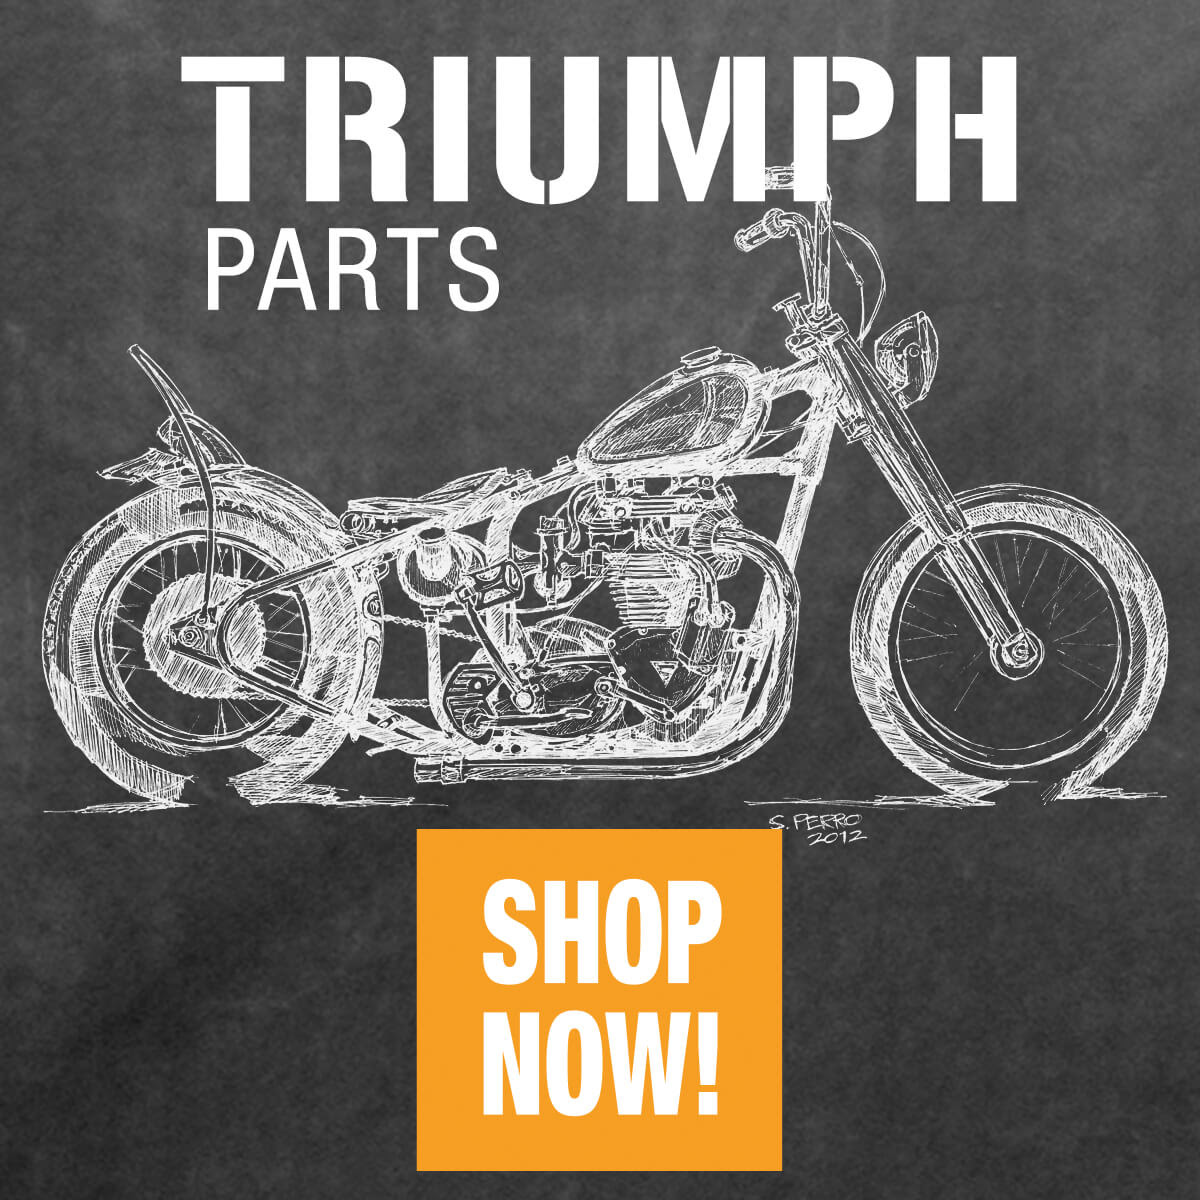 Vintage Triumph Parts